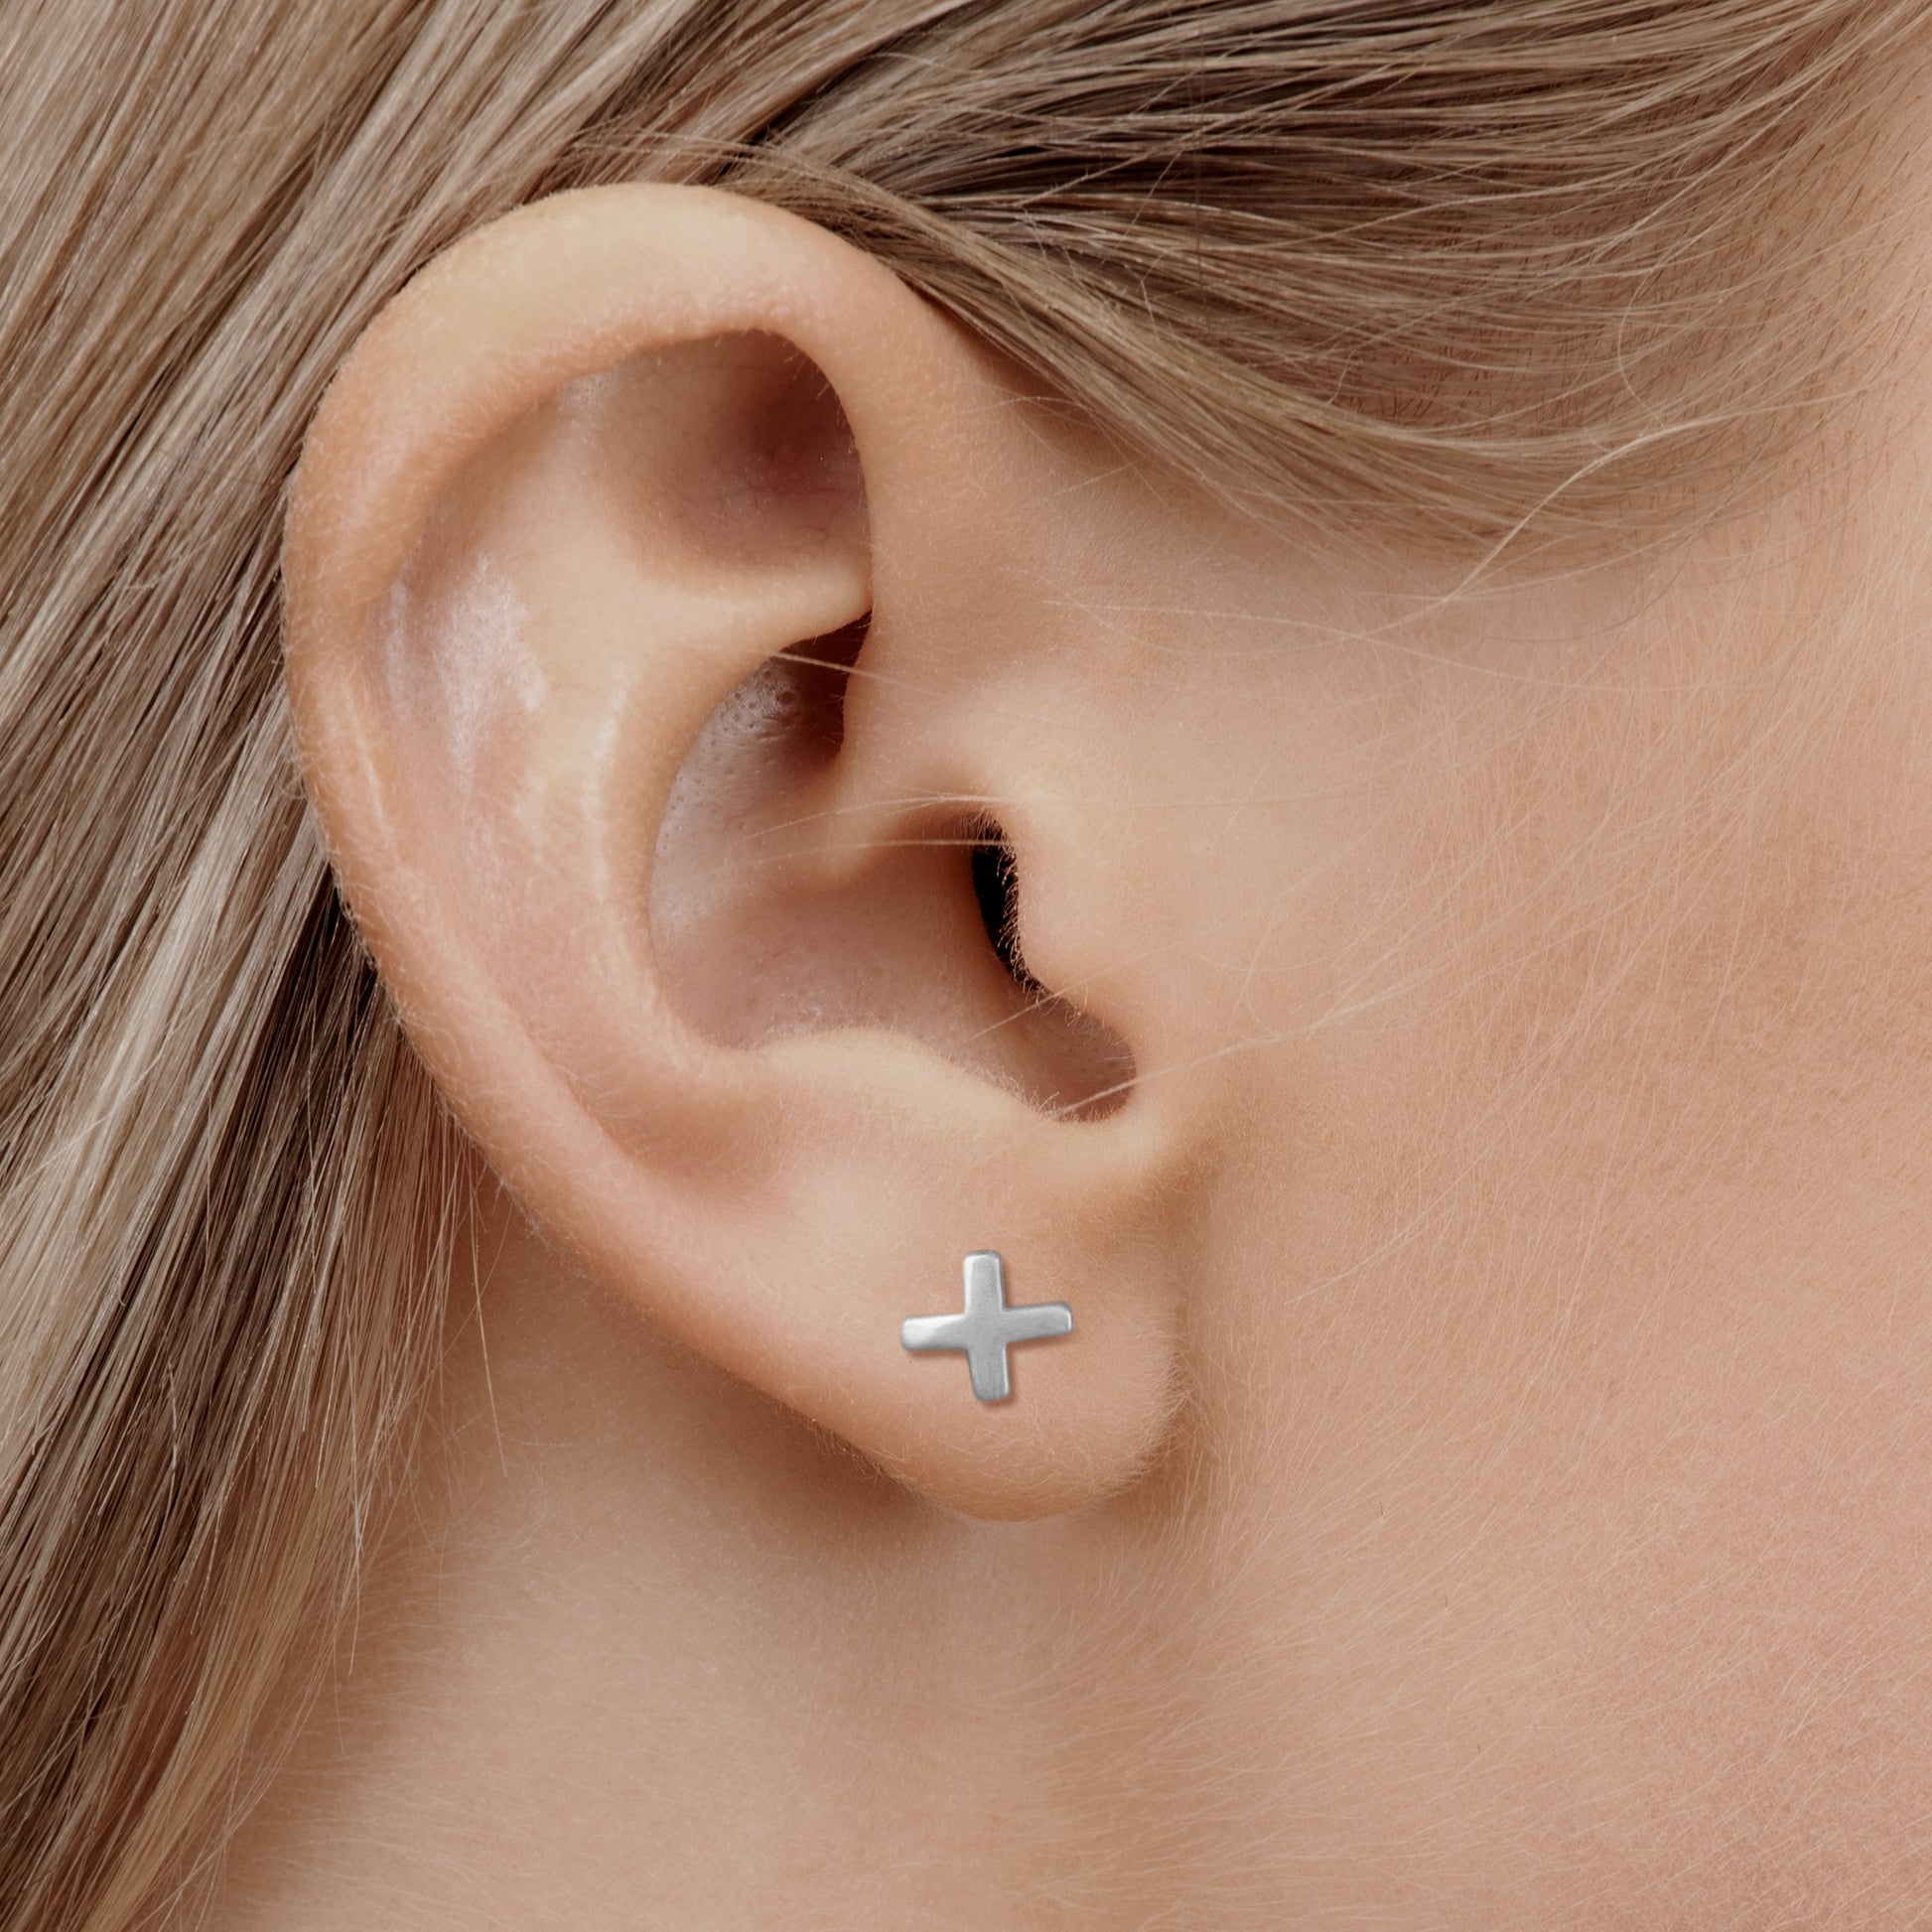 Silver cross earring in nurse model